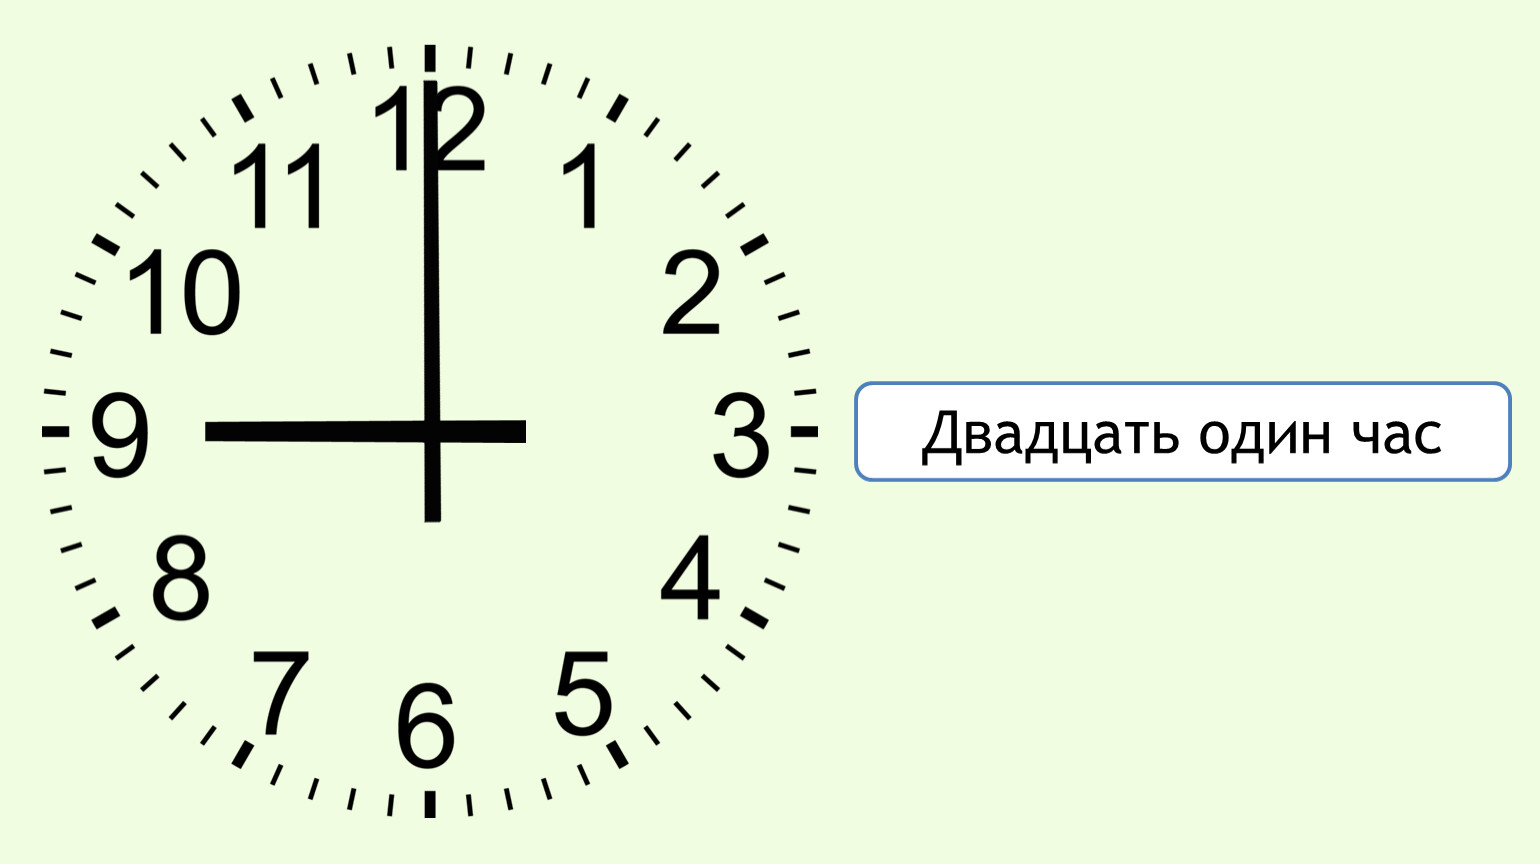 Читать часы 9. Часы показывают час. Время циферблат. Циферблат 9 часов. Циферблат часов с минутами.